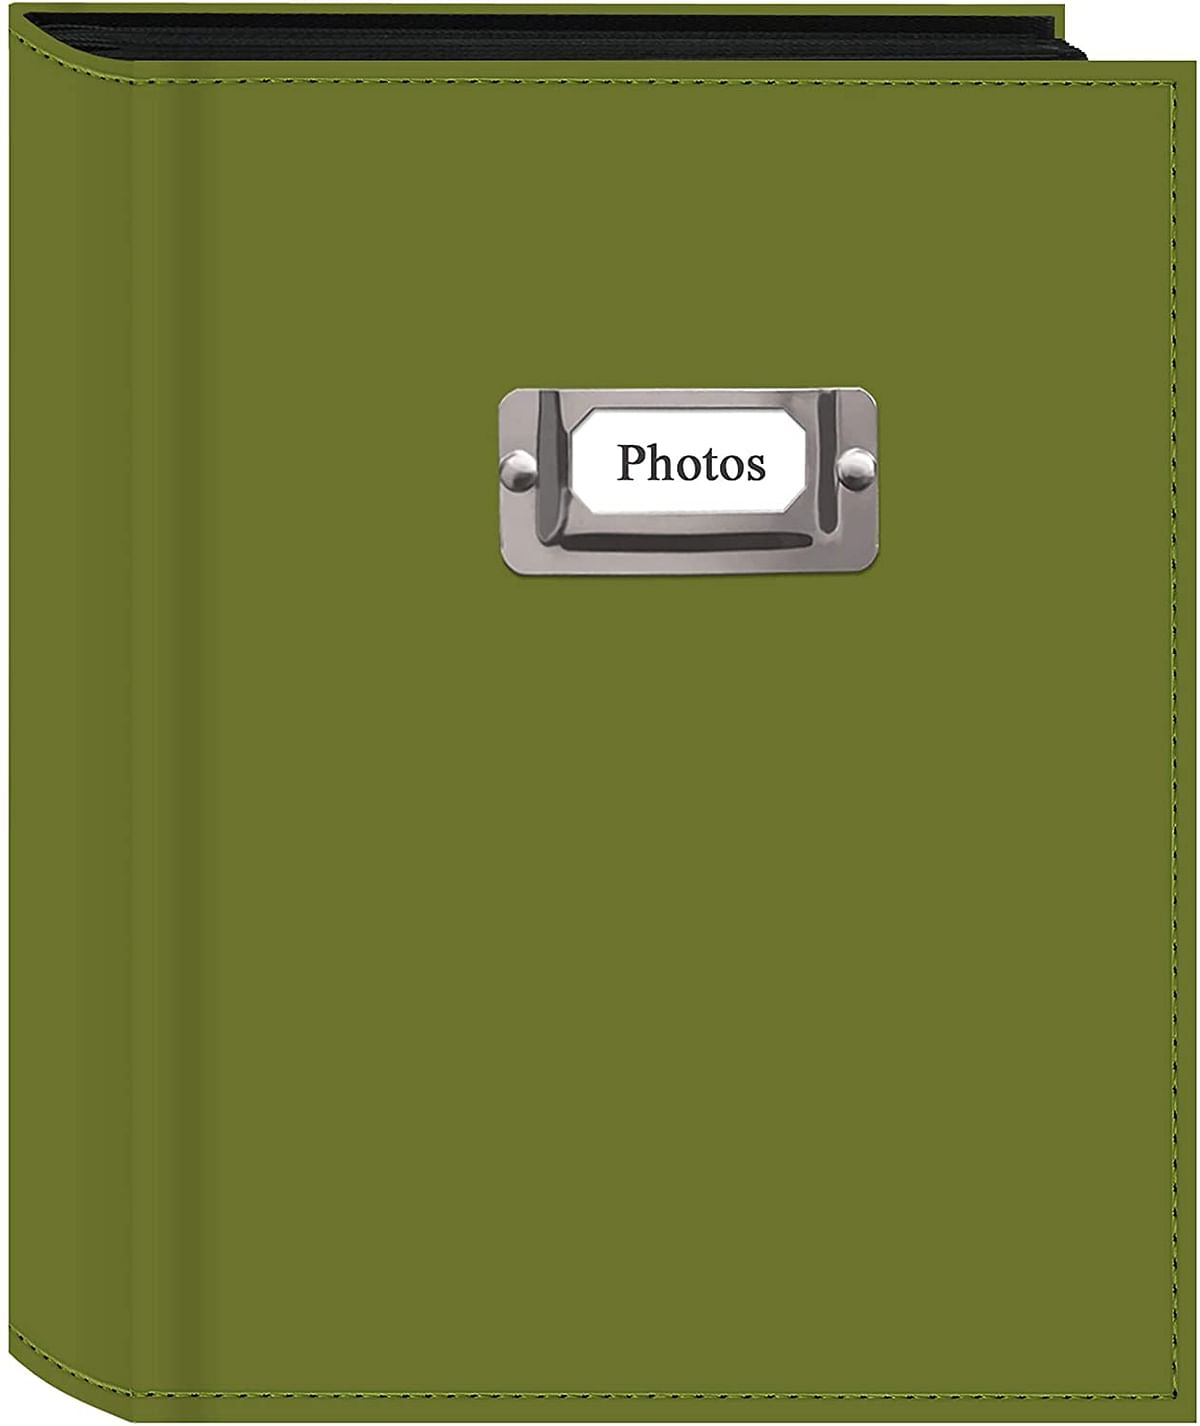 ألبوم صور Pioneer Photo 208-Pocket بلون أخضر فاتح مخيط بمعدن فضي لوحة لأربعة مطبوعات 10.16 سم × 15.2